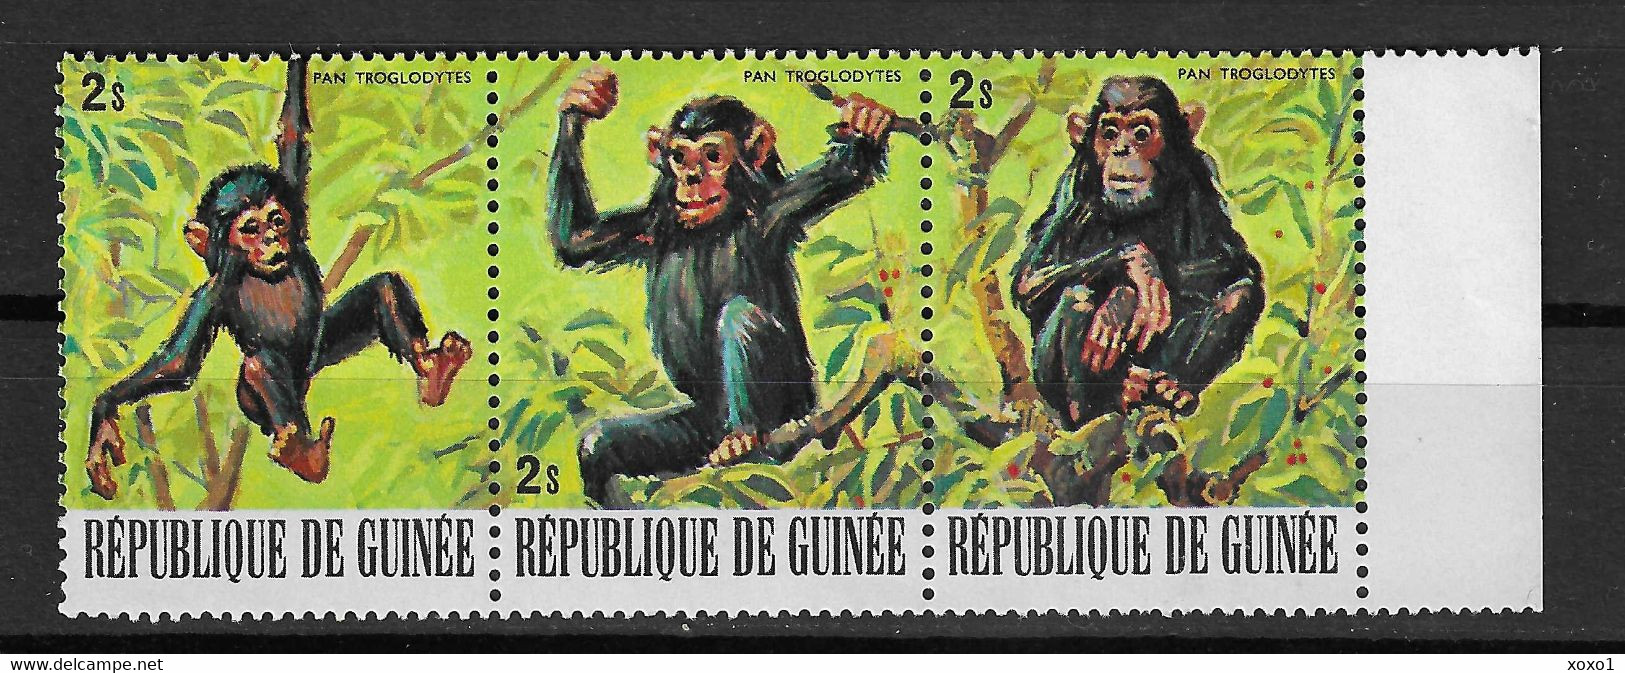 Guinea 1977 Mi.No. 796 - 798  Animals  Pan Troglodytes  Chimpanzee  3v  MNH** 1.50 € - Chimpanzés